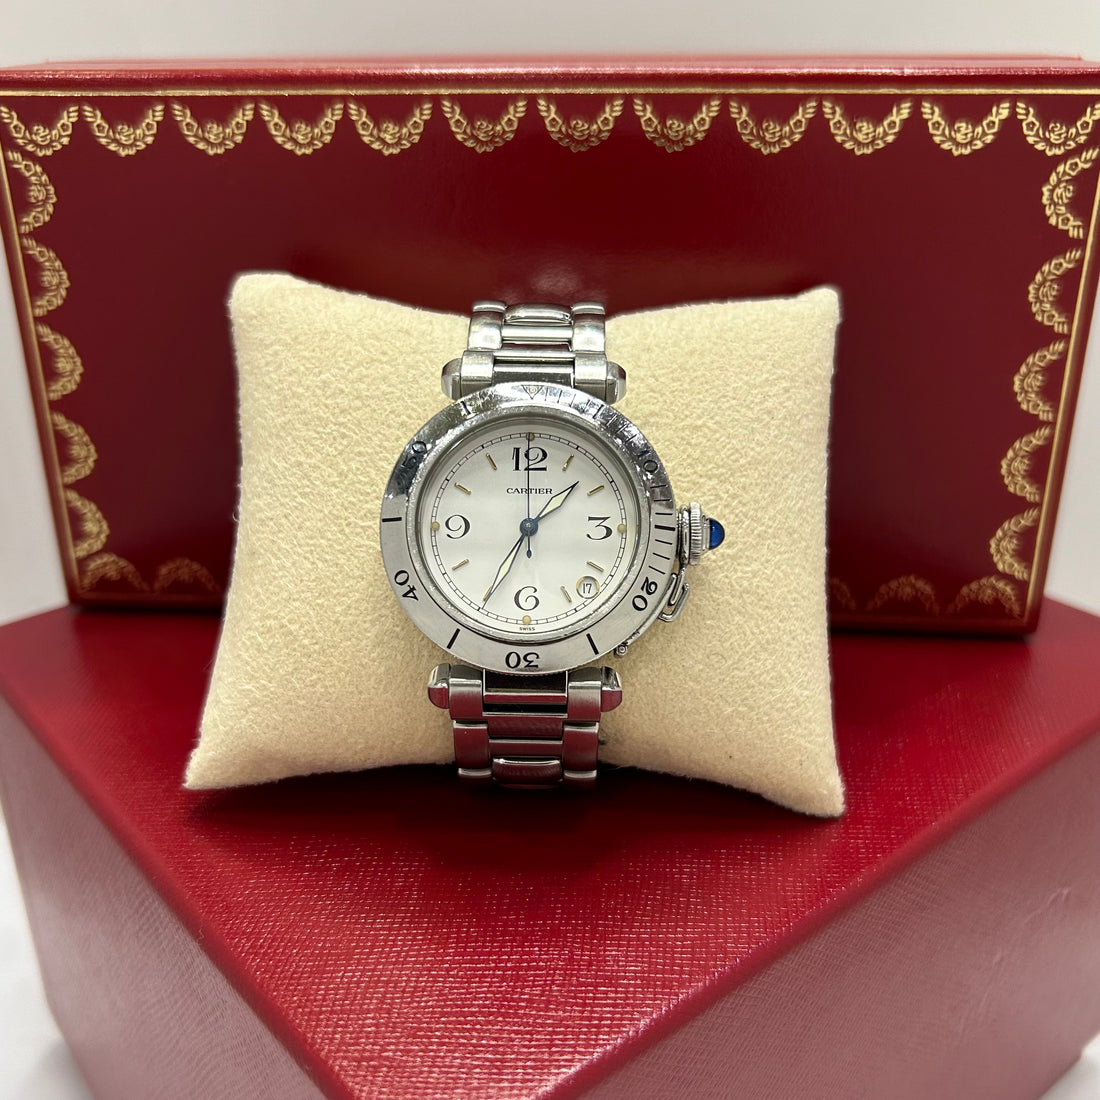 Cartier - Pasha watch